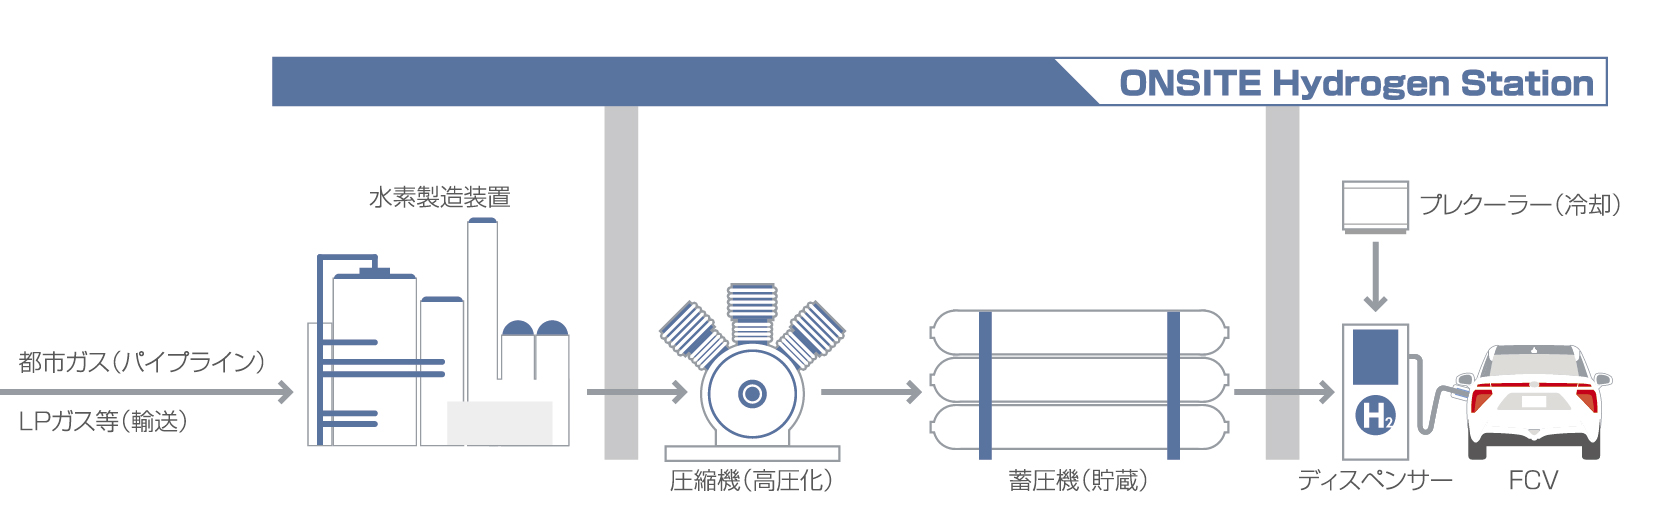 水素ステーションの概要 Jhym 日本水素ステーションネットワーク合同会社